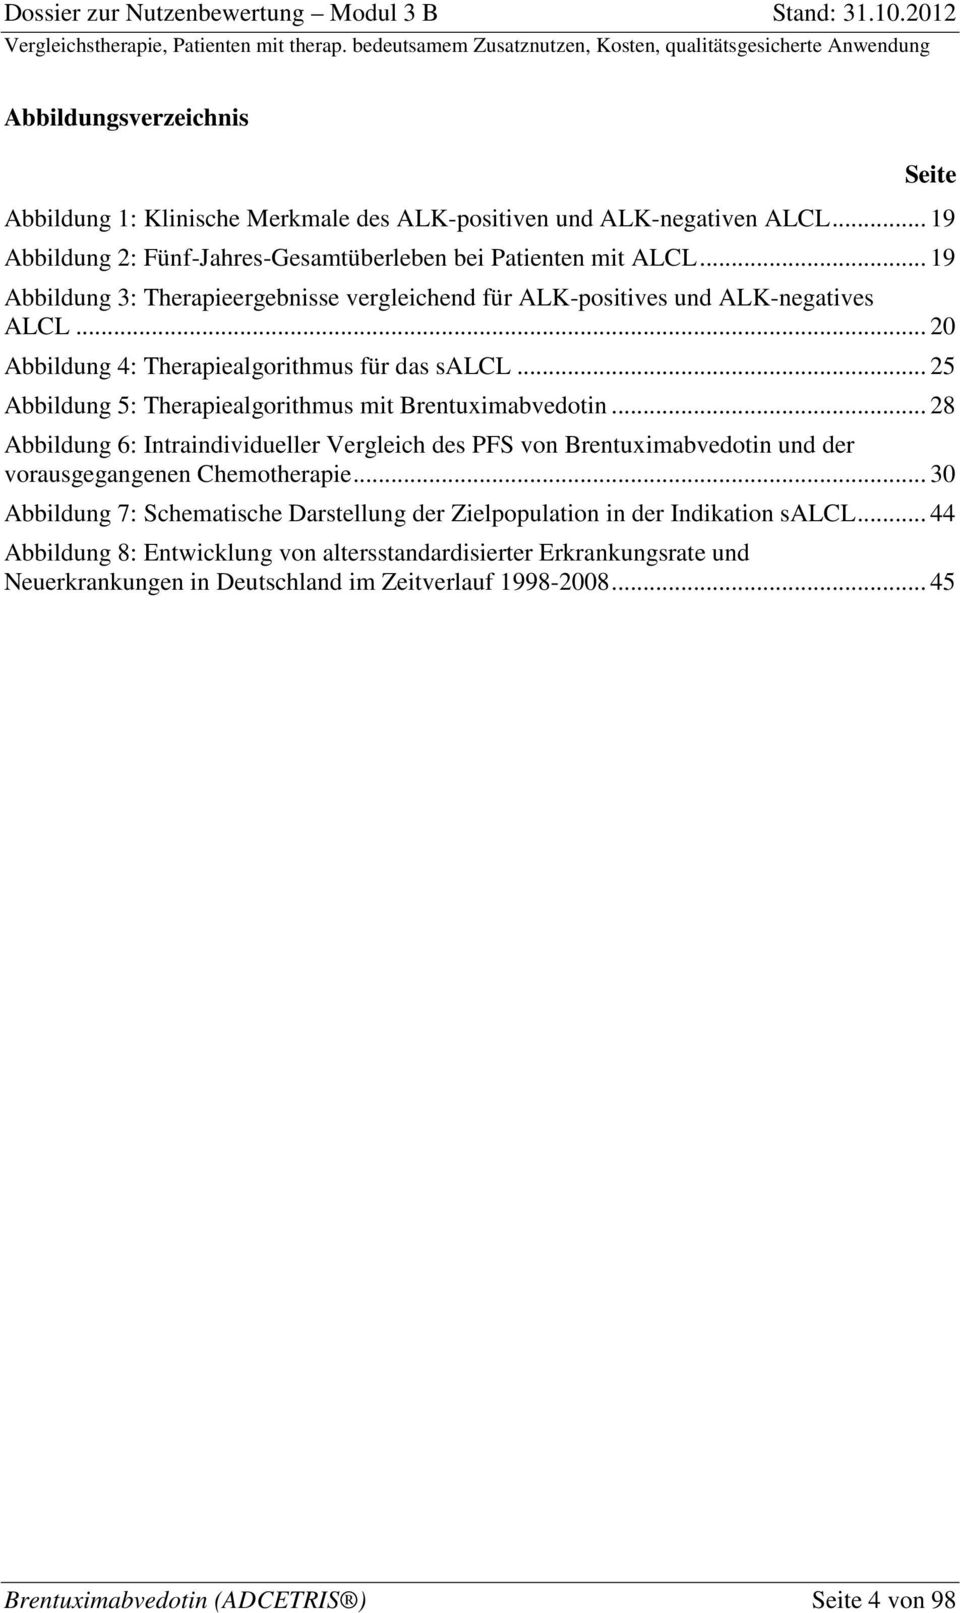 .. 25 Abbildung 5: Therapiealgorithmus mit Brentuximabvedotin... 28 Abbildung 6: Intraindividueller Vergleich des PFS von Brentuximabvedotin und der vorausgegangenen Chemotherapie.